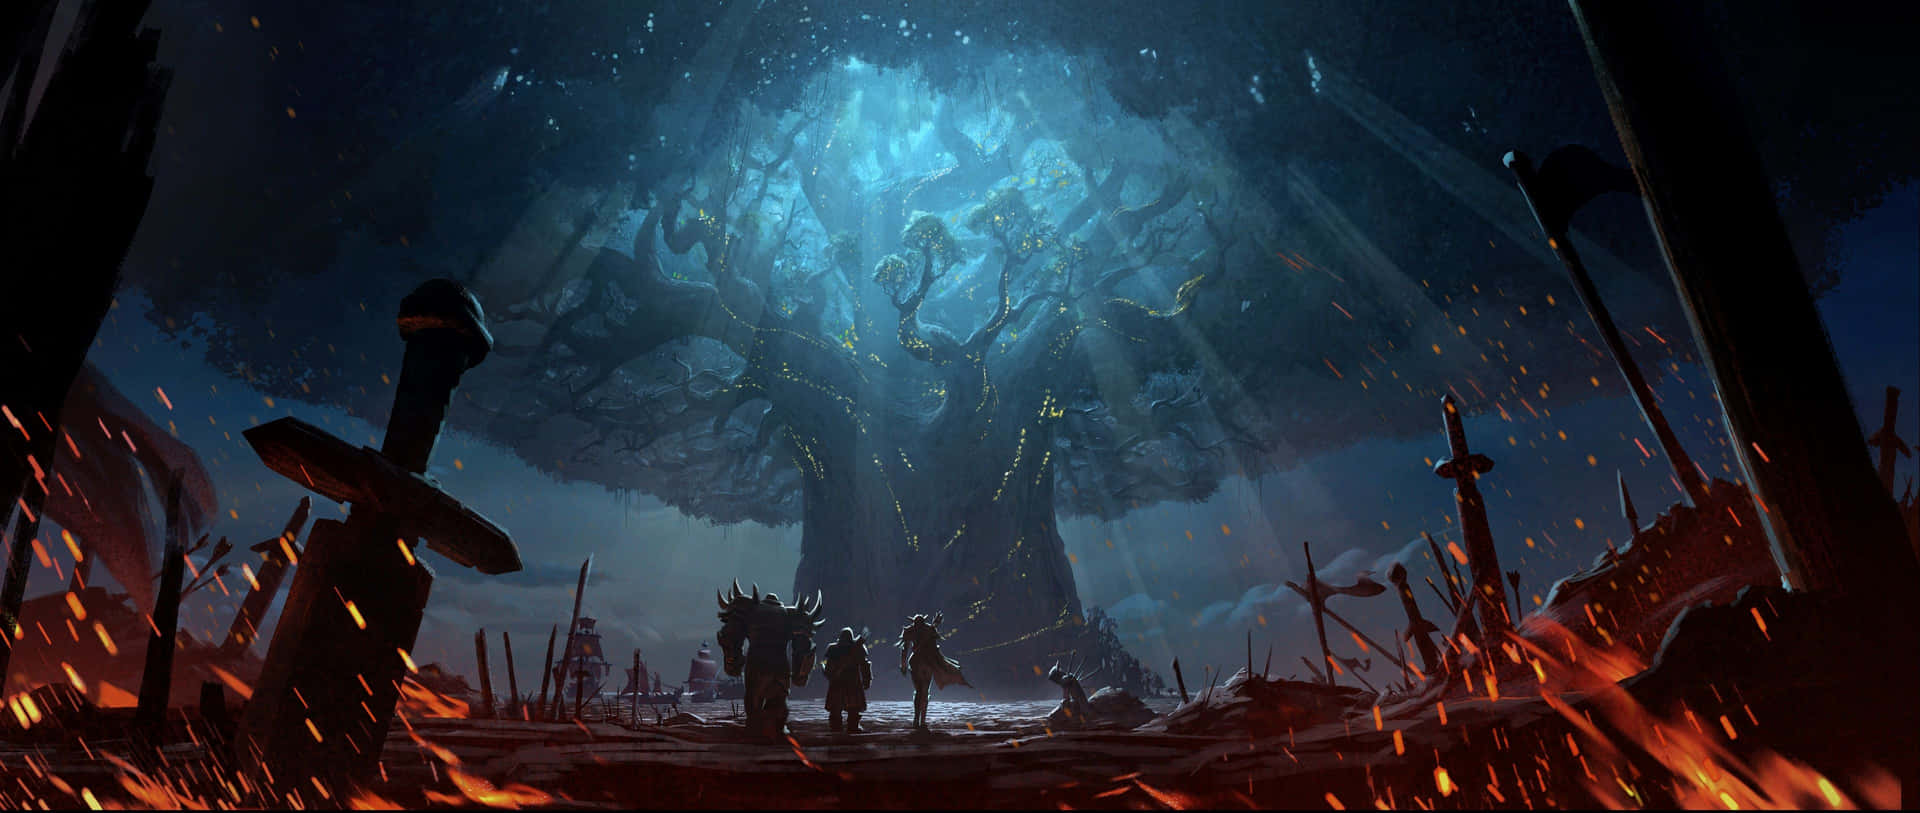 En fantasi scene med et træ og sværd Wallpaper